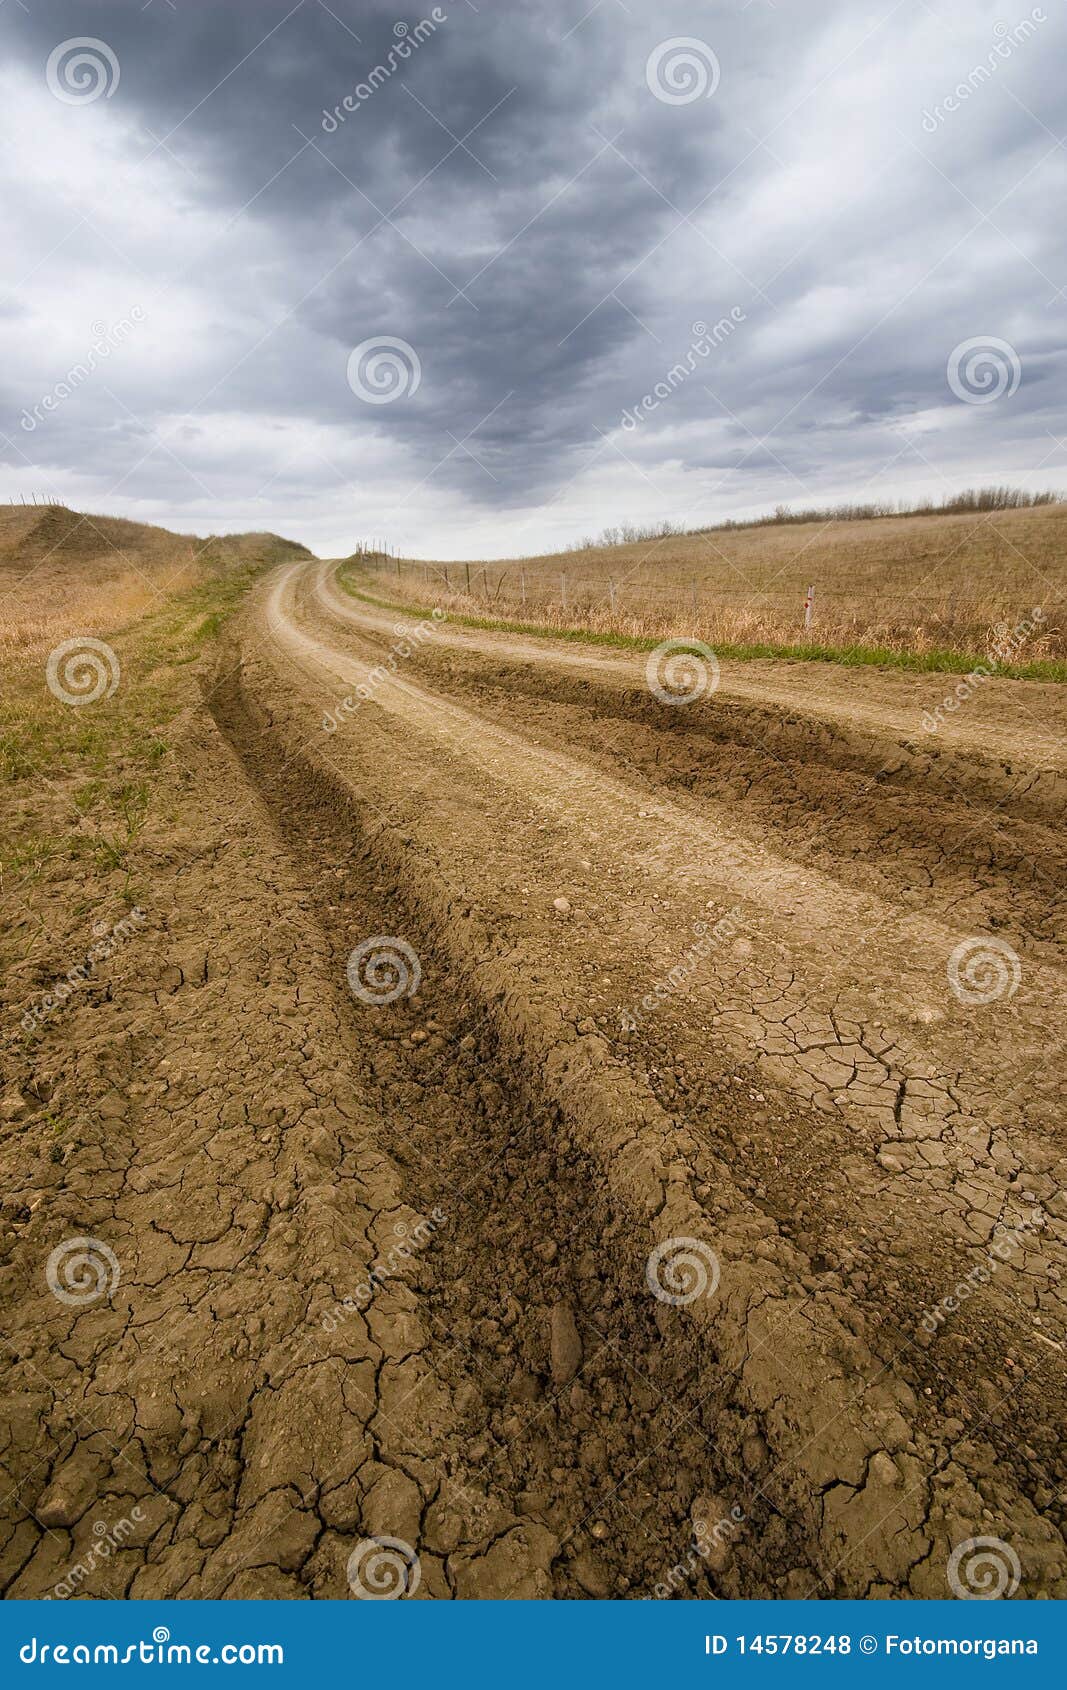 Rural road. Dirt road in prairie with sky